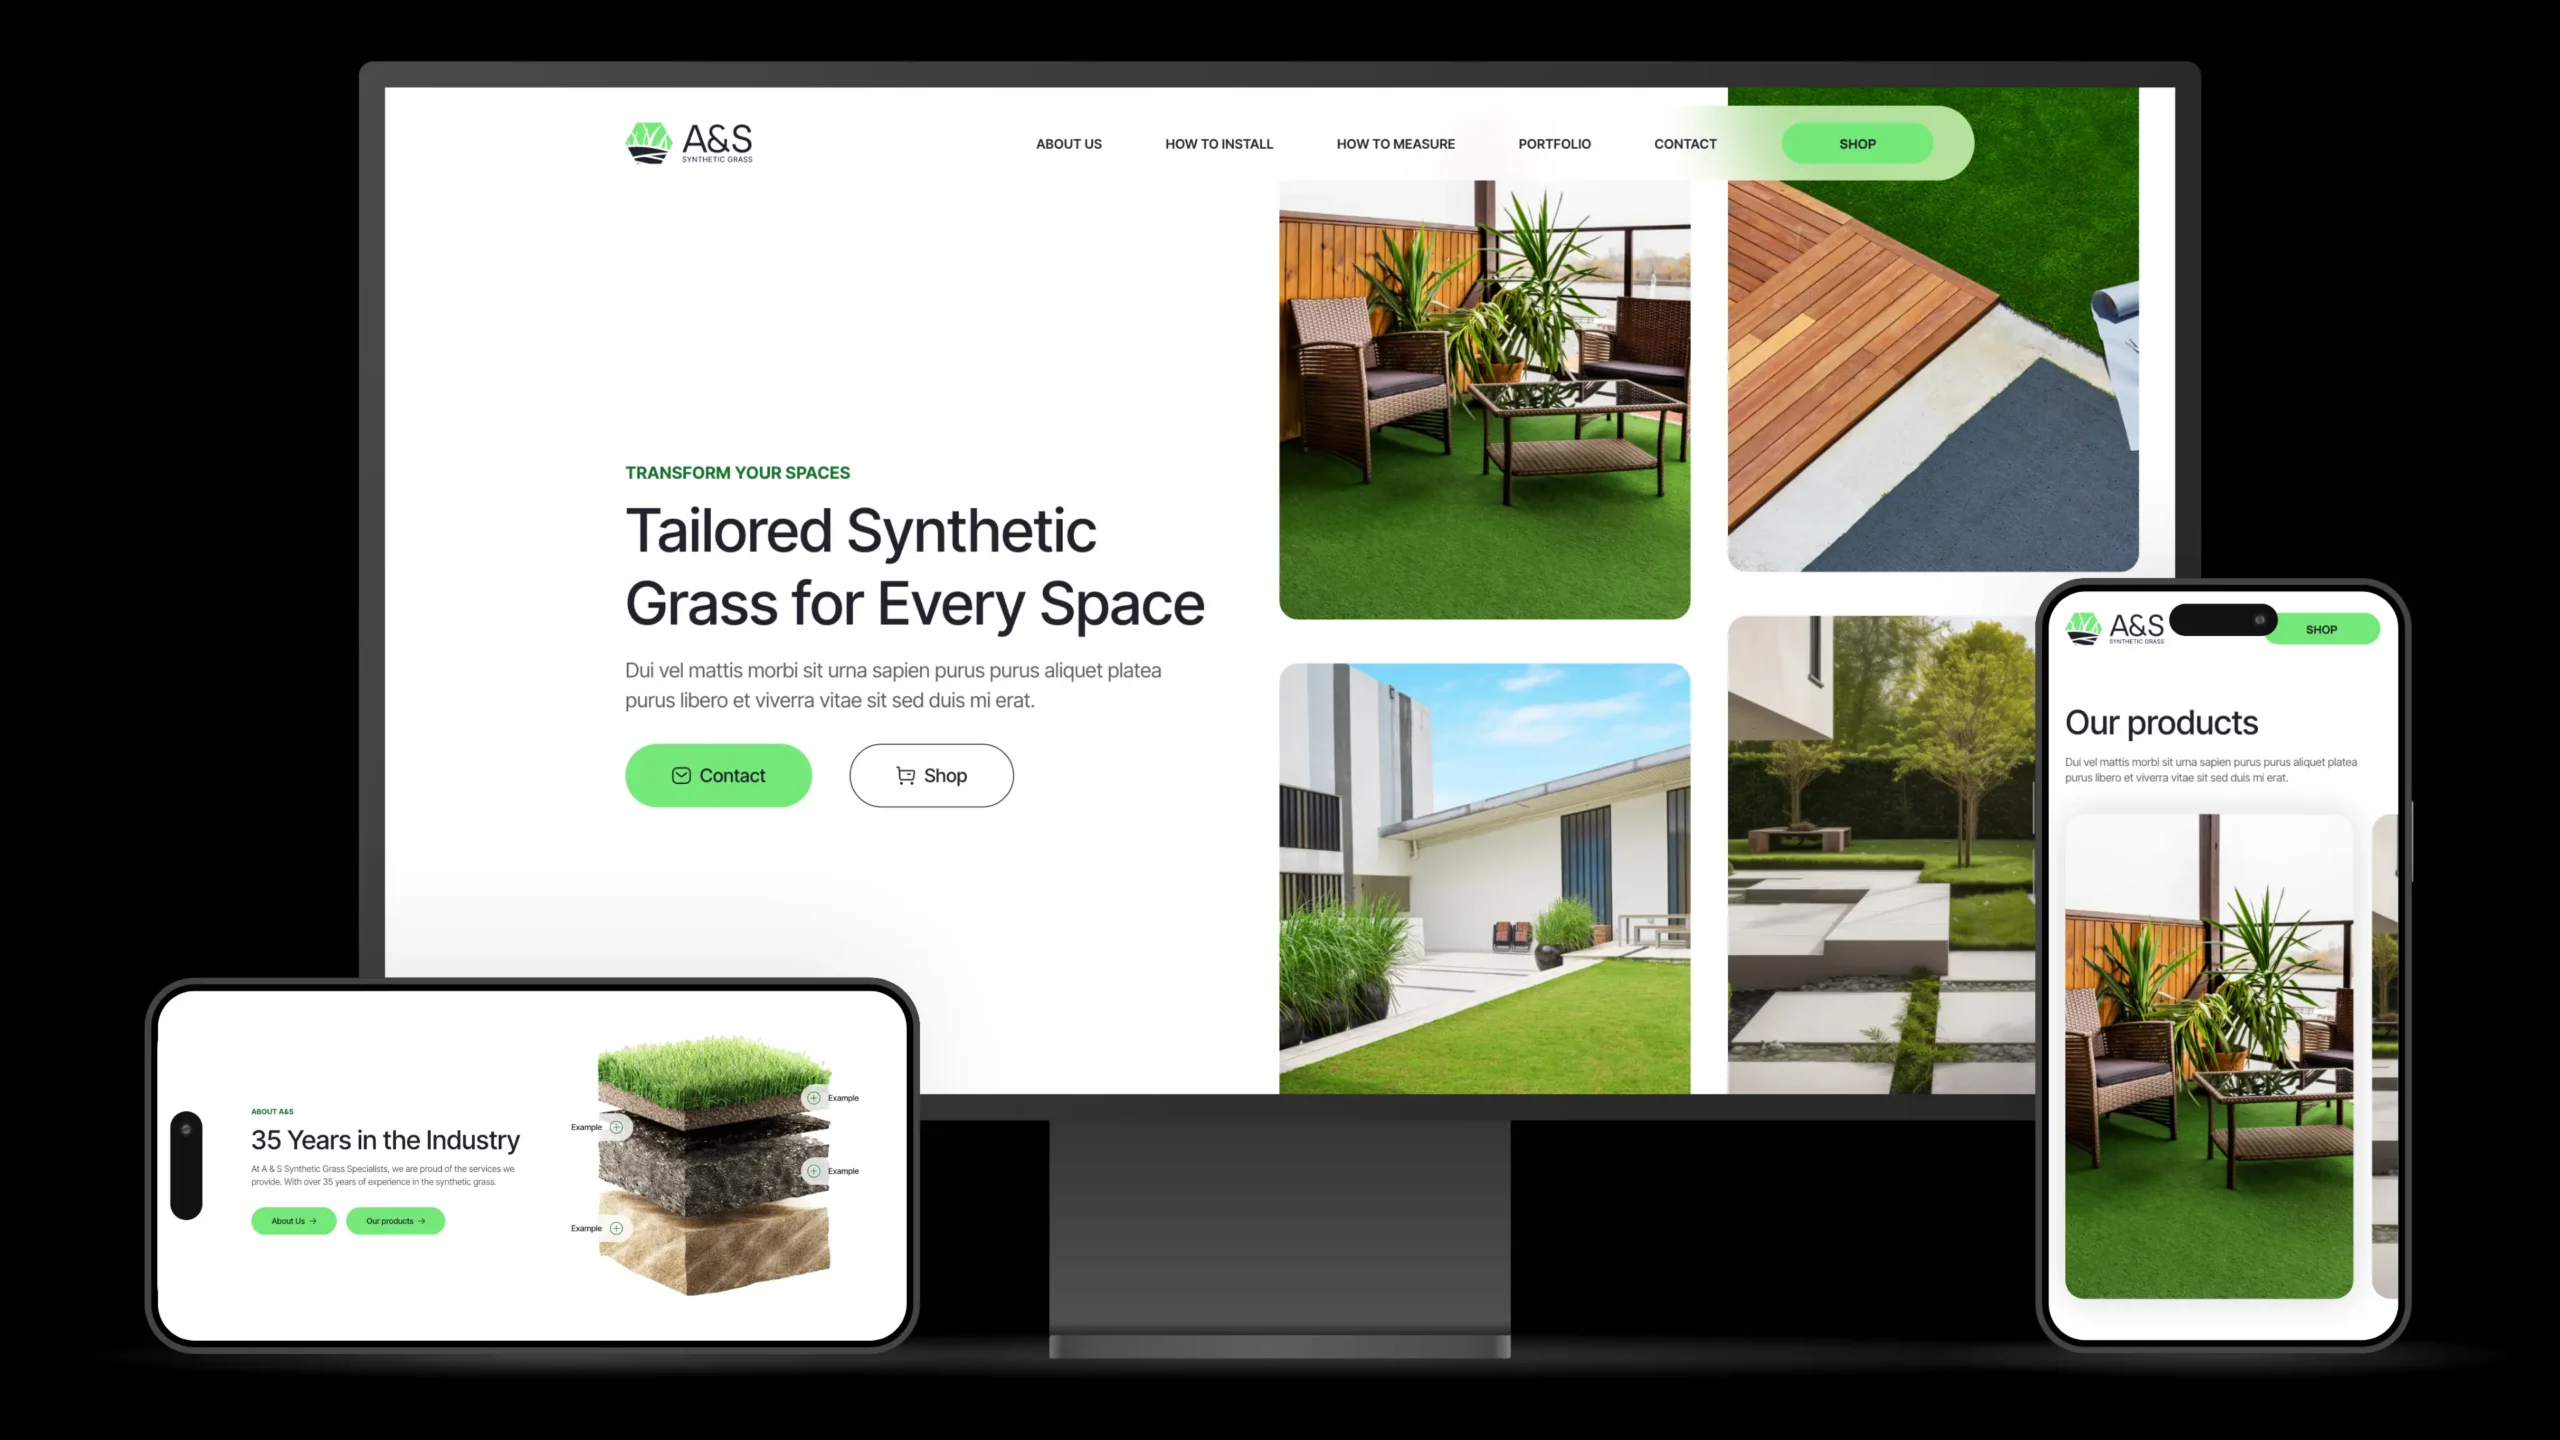 Sitio web de A&S Synthetic Grass presentado en diferentes dispositivos, mostrando la versatilidad del diseño web creado por Jorge ML para adaptarse a múltiples pantallas.